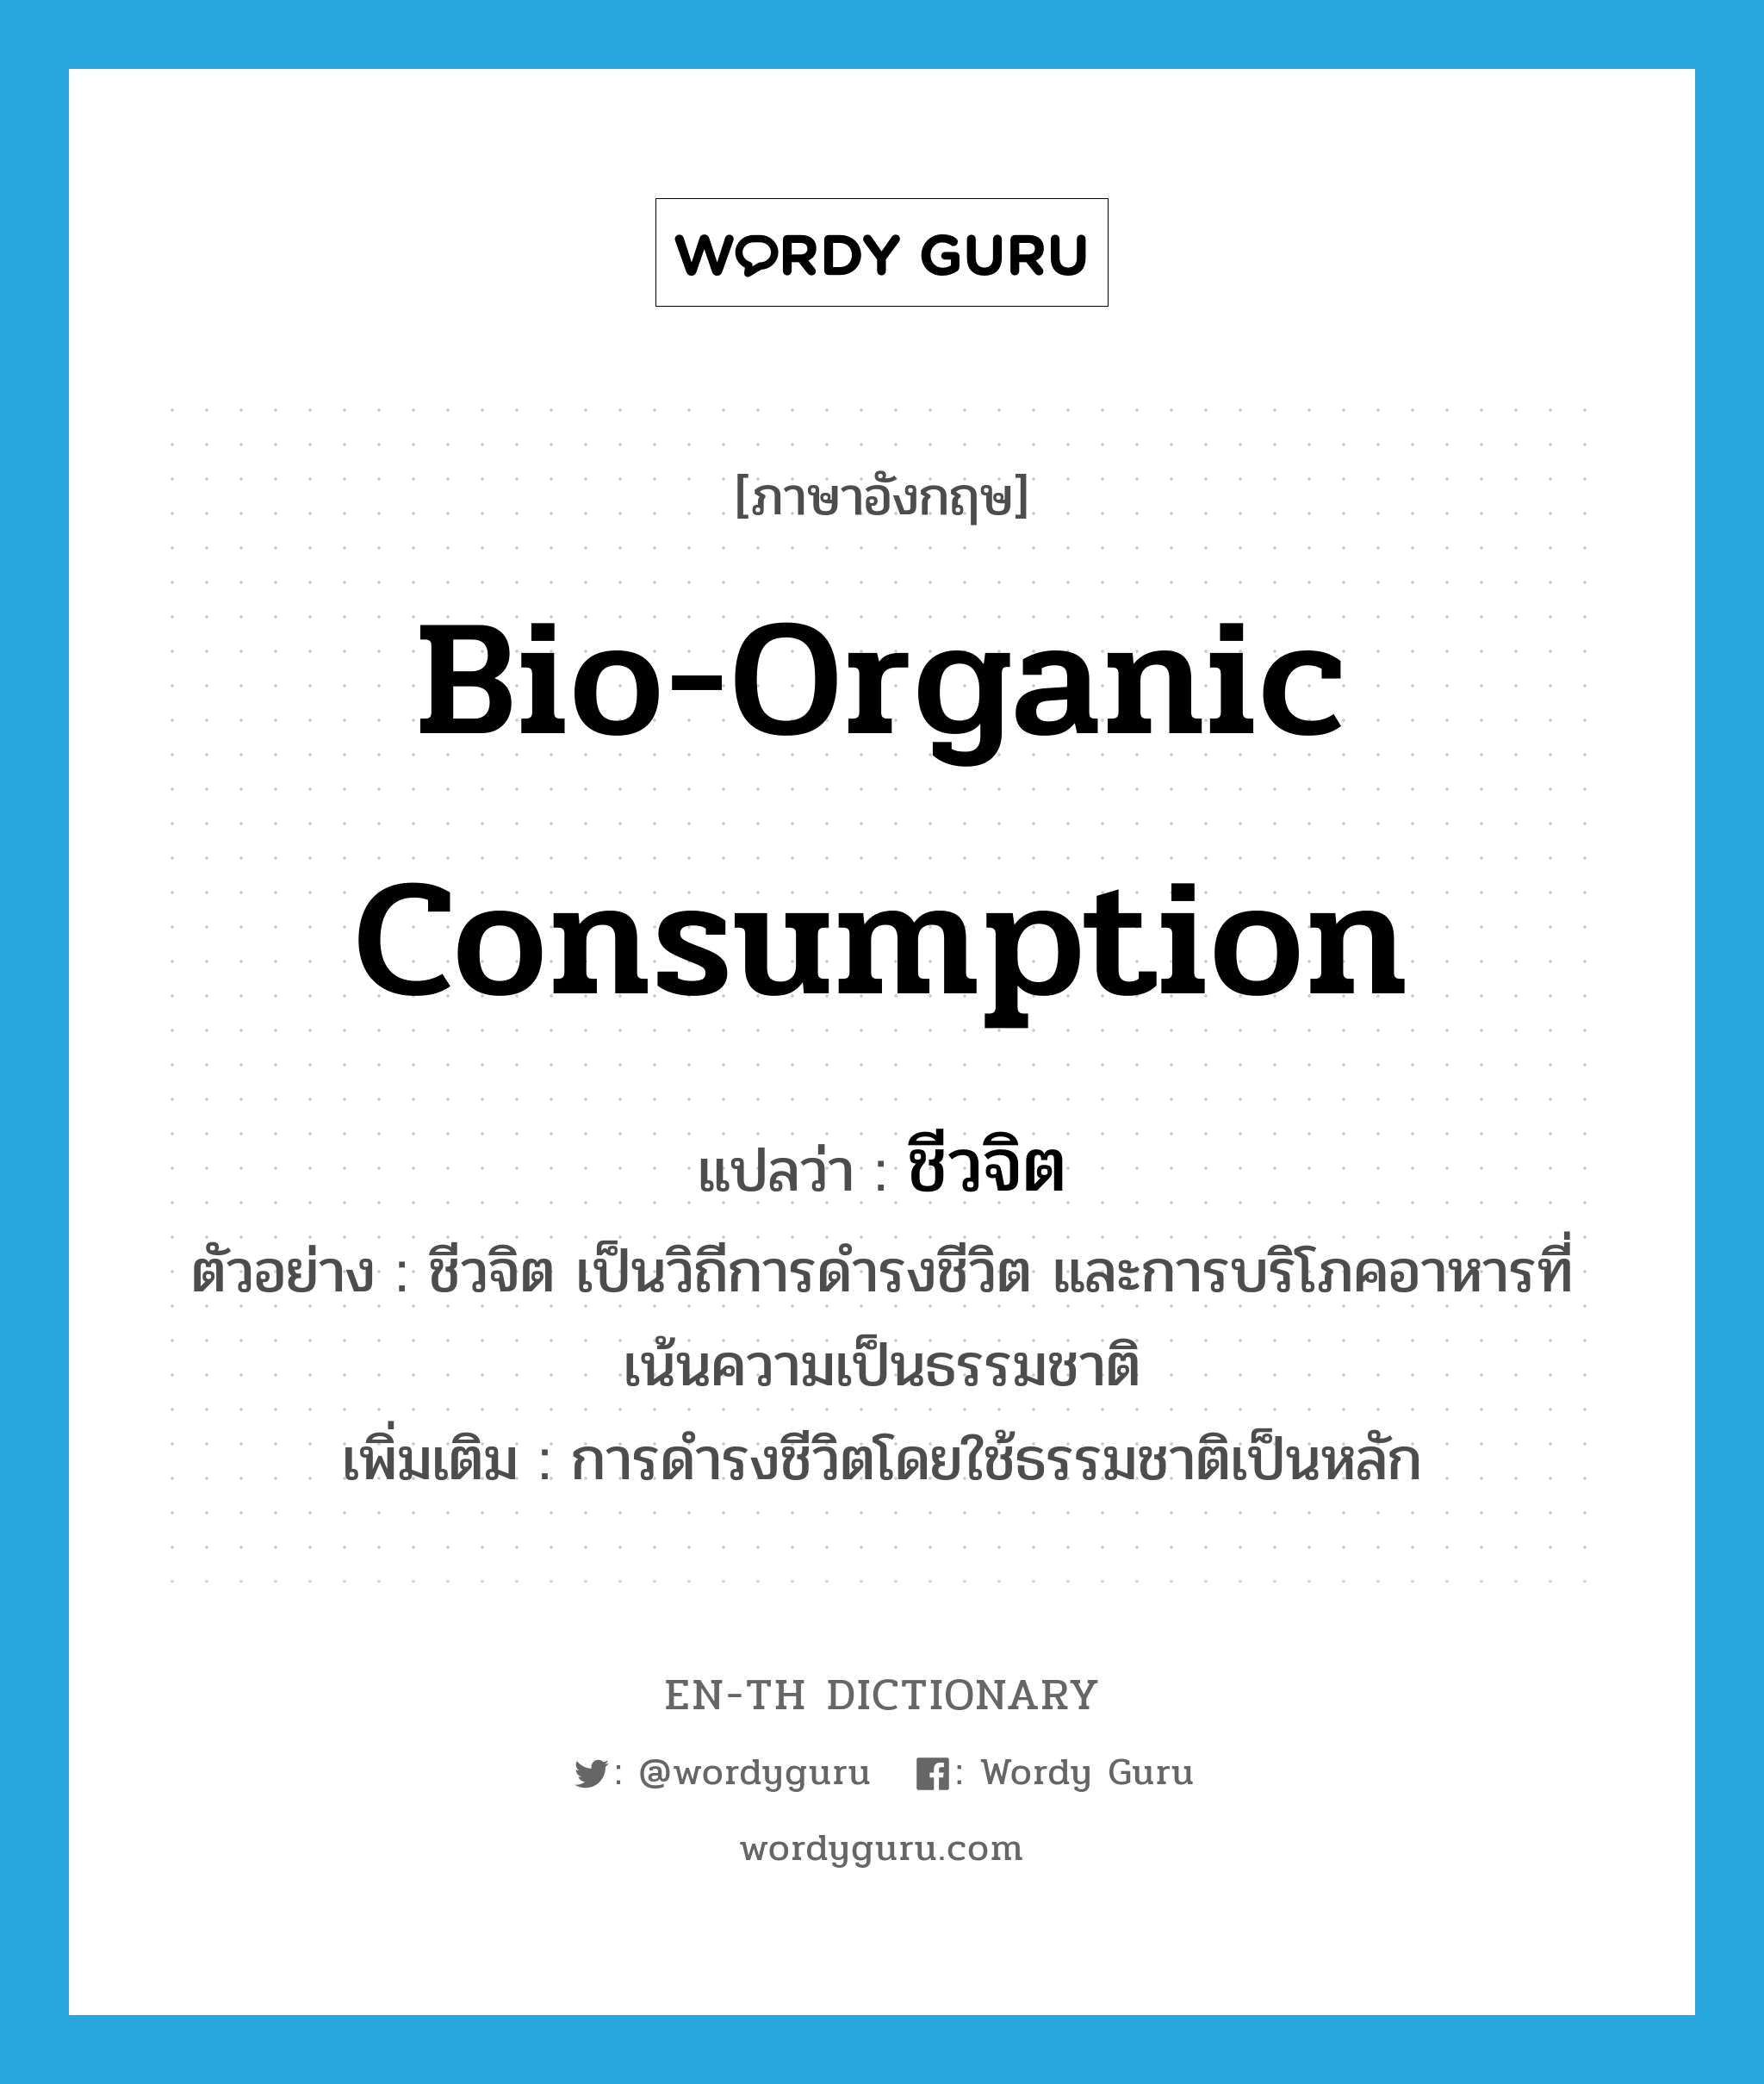 bio-organic consumption แปลว่า?, คำศัพท์ภาษาอังกฤษ bio-organic consumption แปลว่า ชีวจิต ประเภท N ตัวอย่าง ชีวจิต เป็นวิถีการดำรงชีวิต และการบริโภคอาหารที่เน้นความเป็นธรรมชาติ เพิ่มเติม การดำรงชีวิตโดยใช้ธรรมชาติเป็นหลัก หมวด N